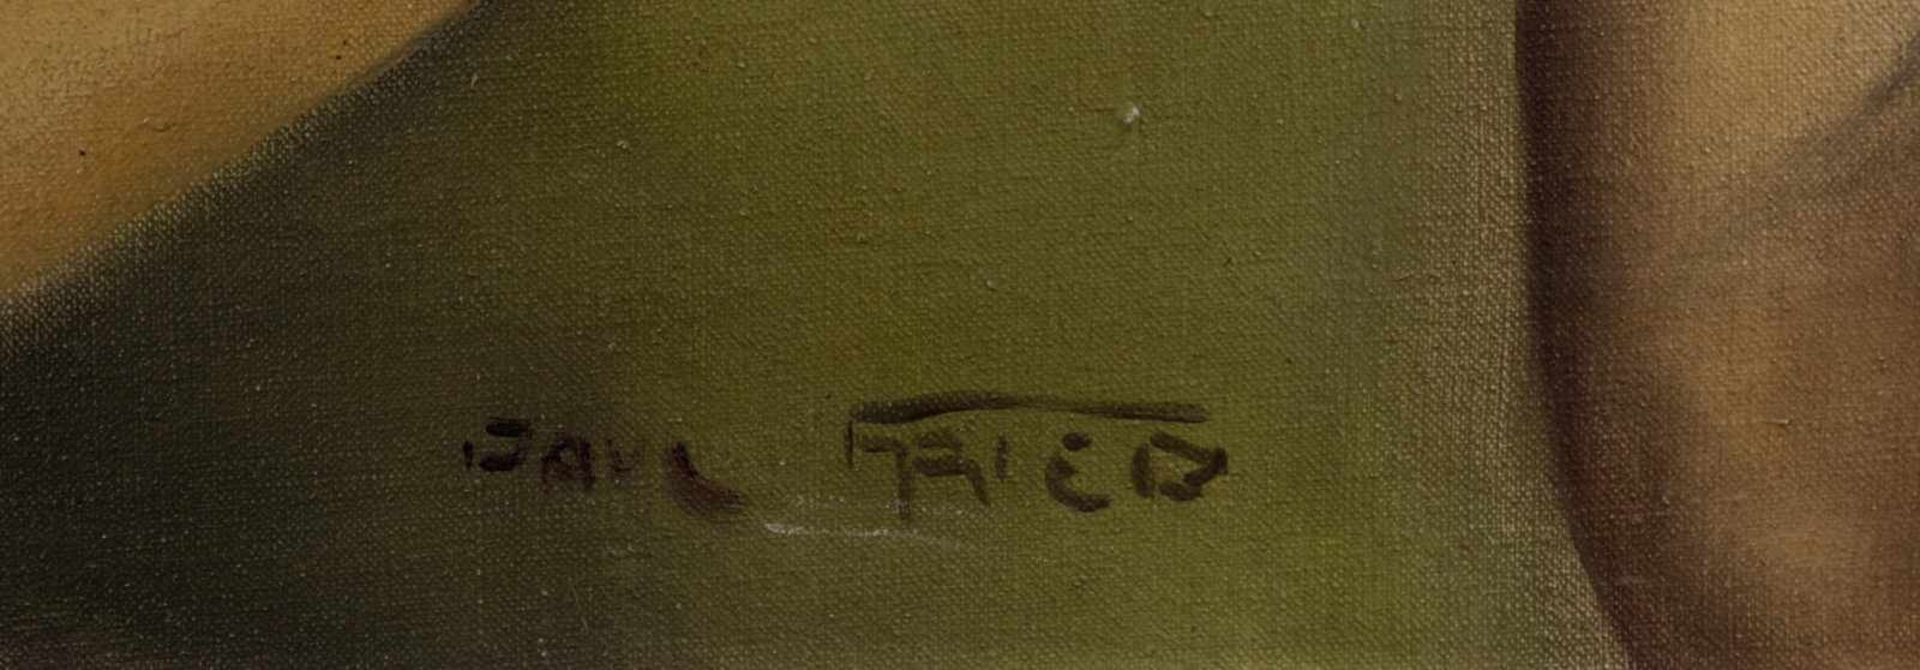 Pal FRIED (1893-1976)"weiblicher Halbakt"Gemälde Öl auf Leinwand, 79 cm x 59 cm,unten mittig - Image 6 of 6